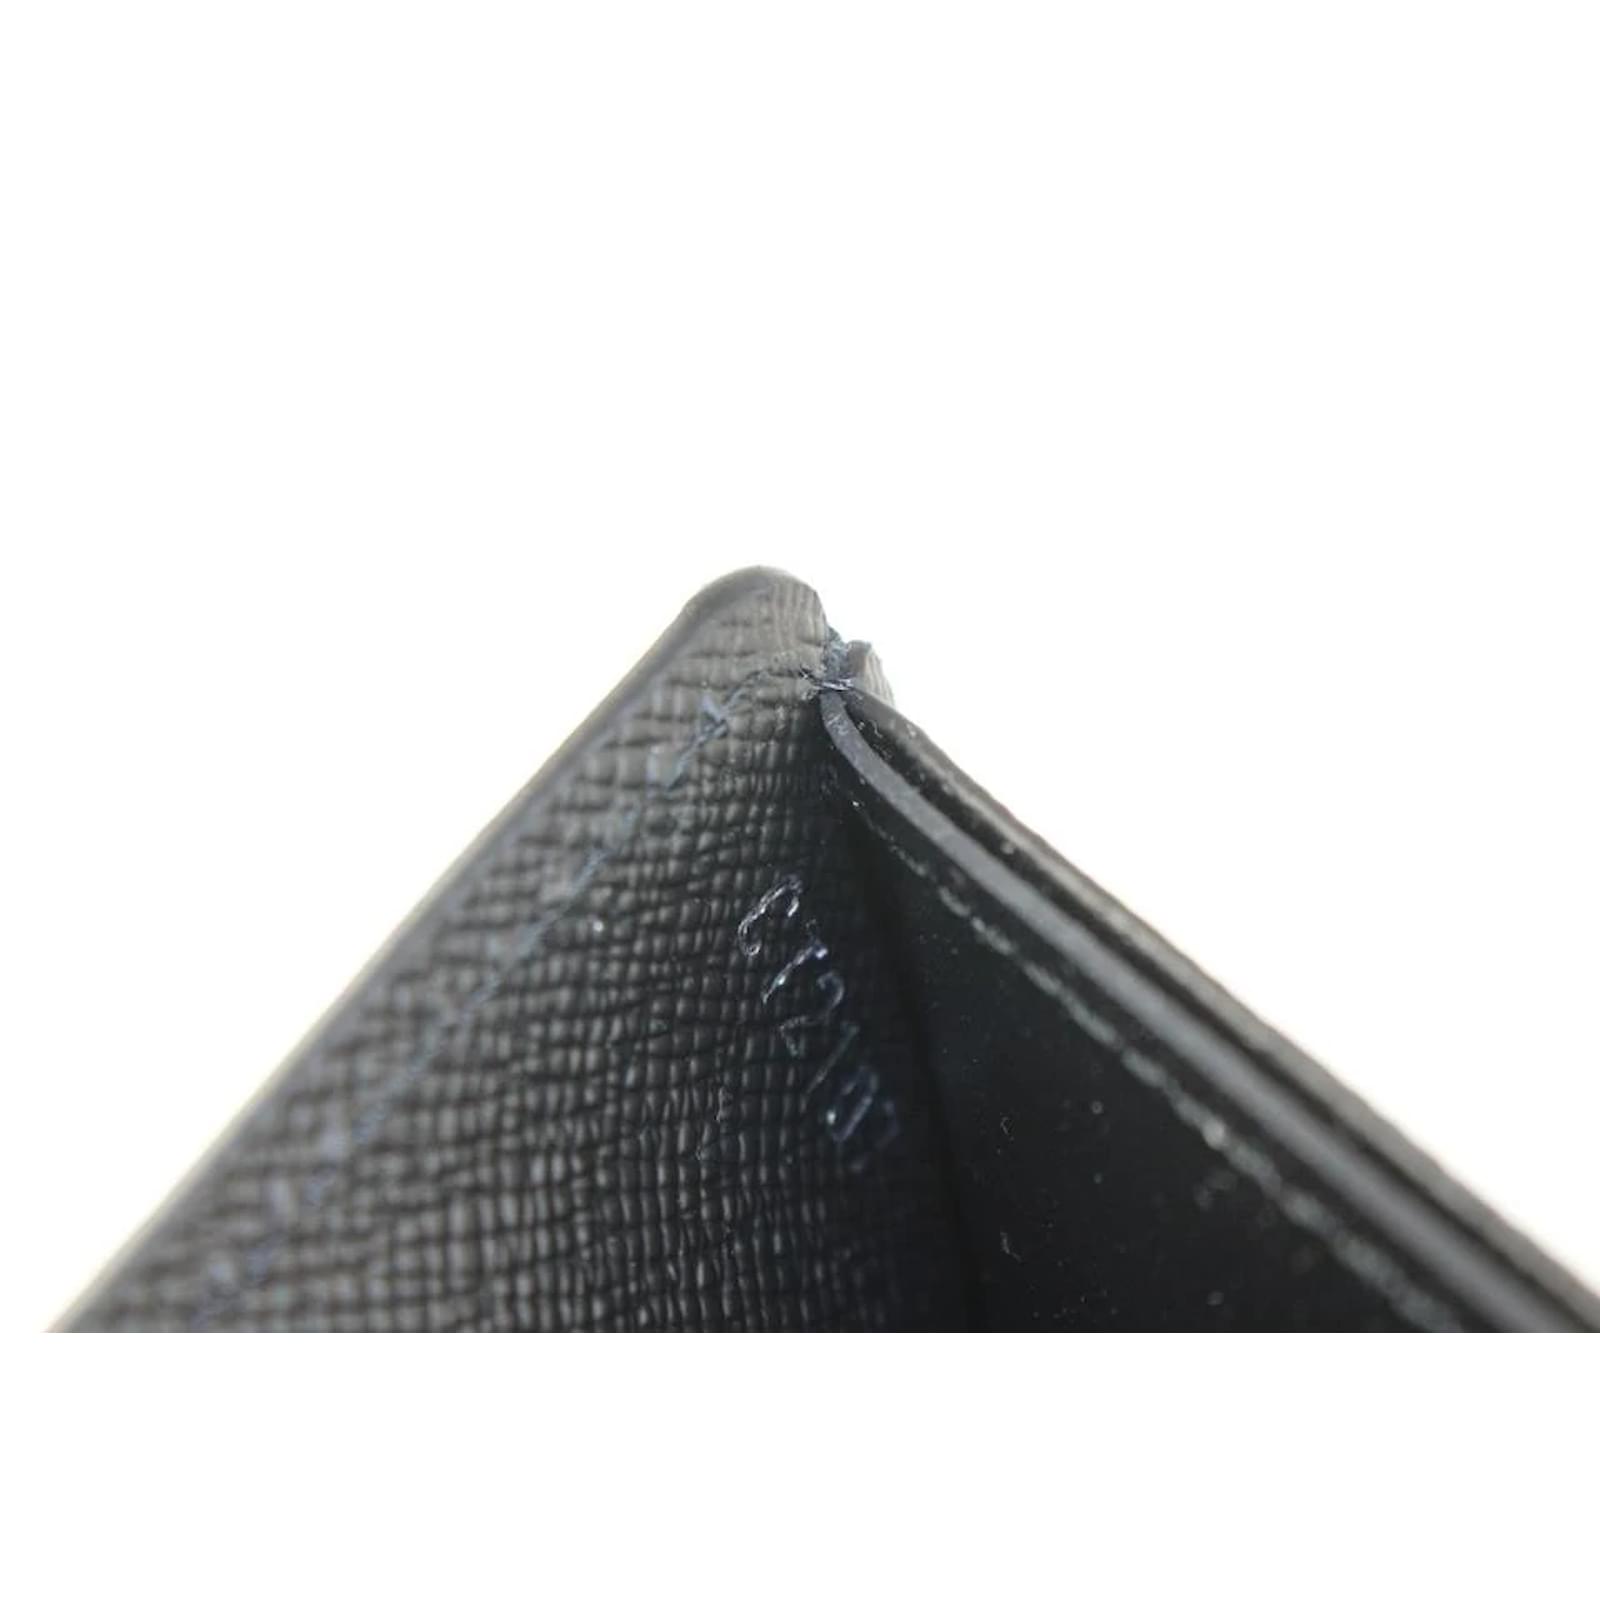 Louis Vuitton Supreme Black Epi Chain Wallet (SN2137) – Luxury Leather Guys